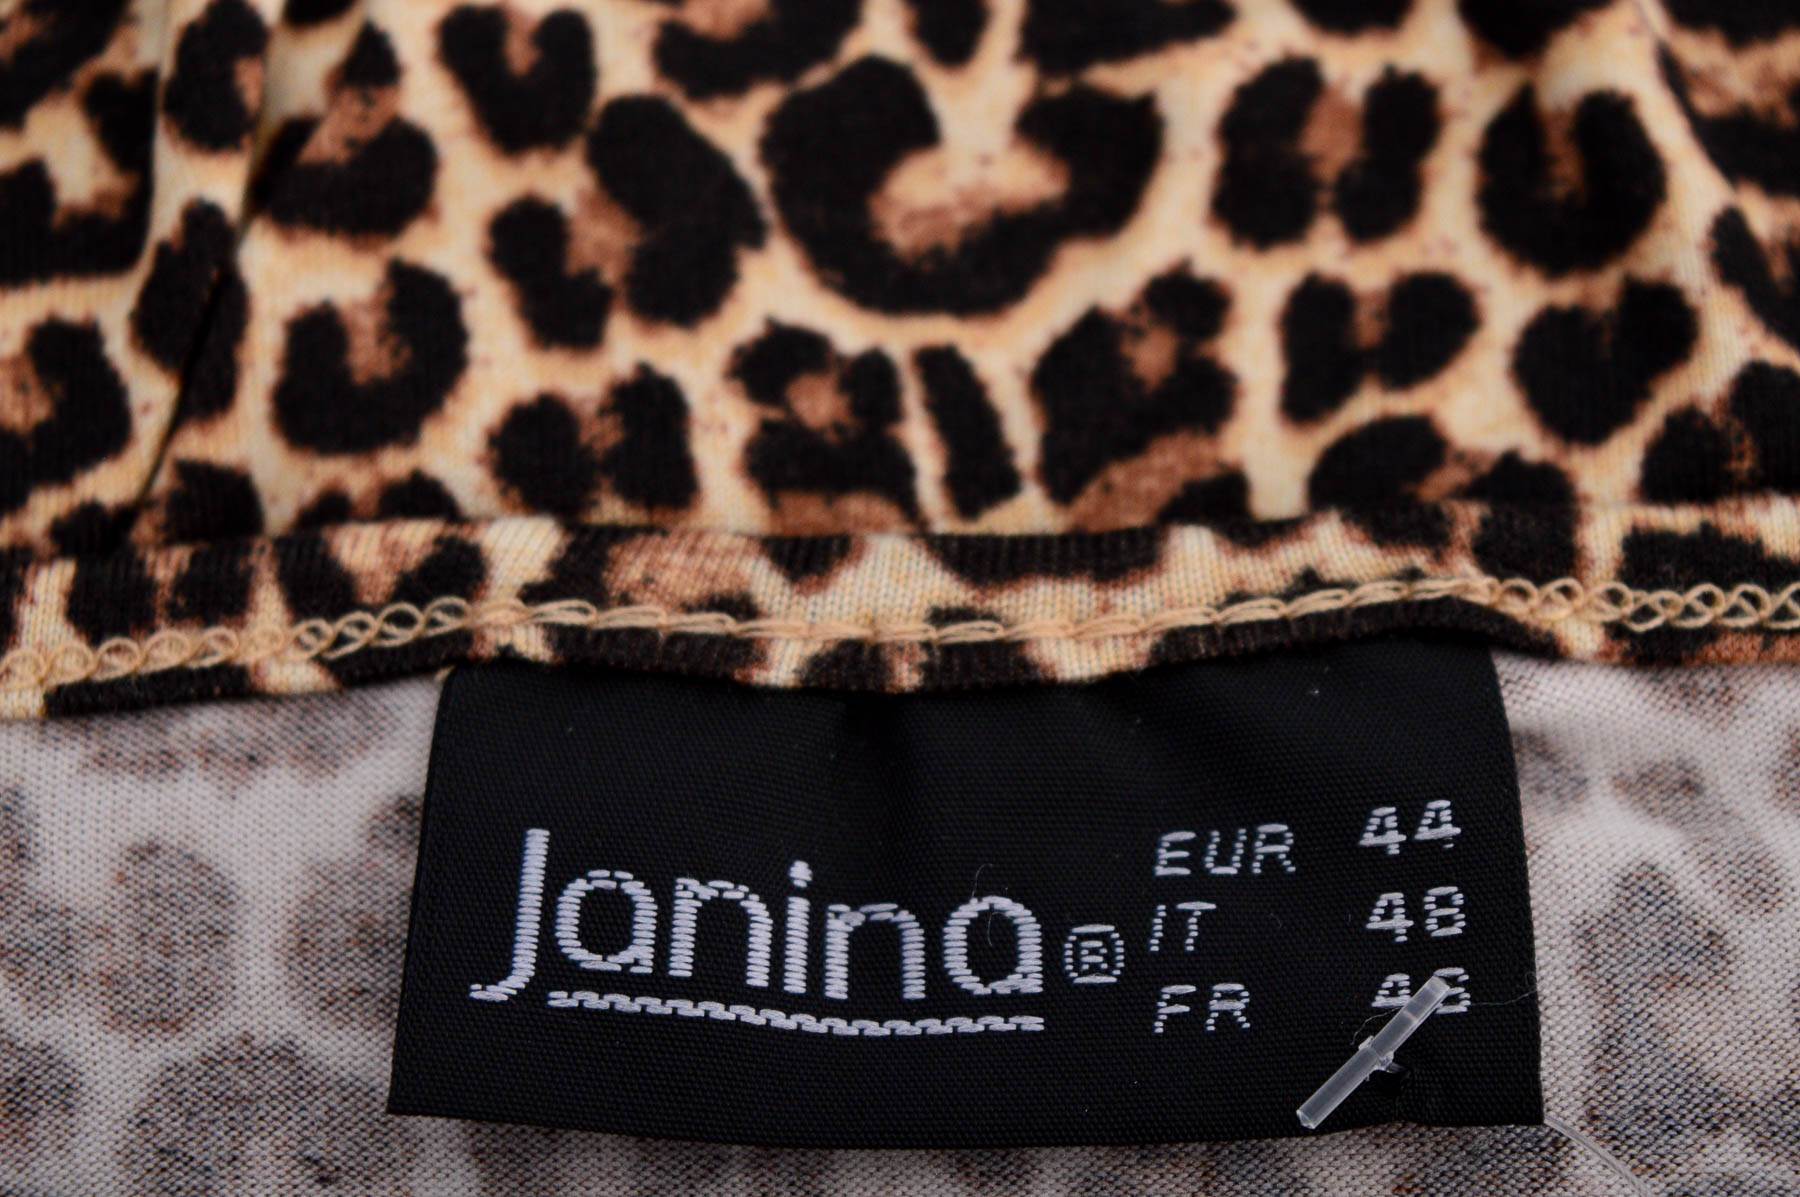 Women's t-shirt - Janina - 2